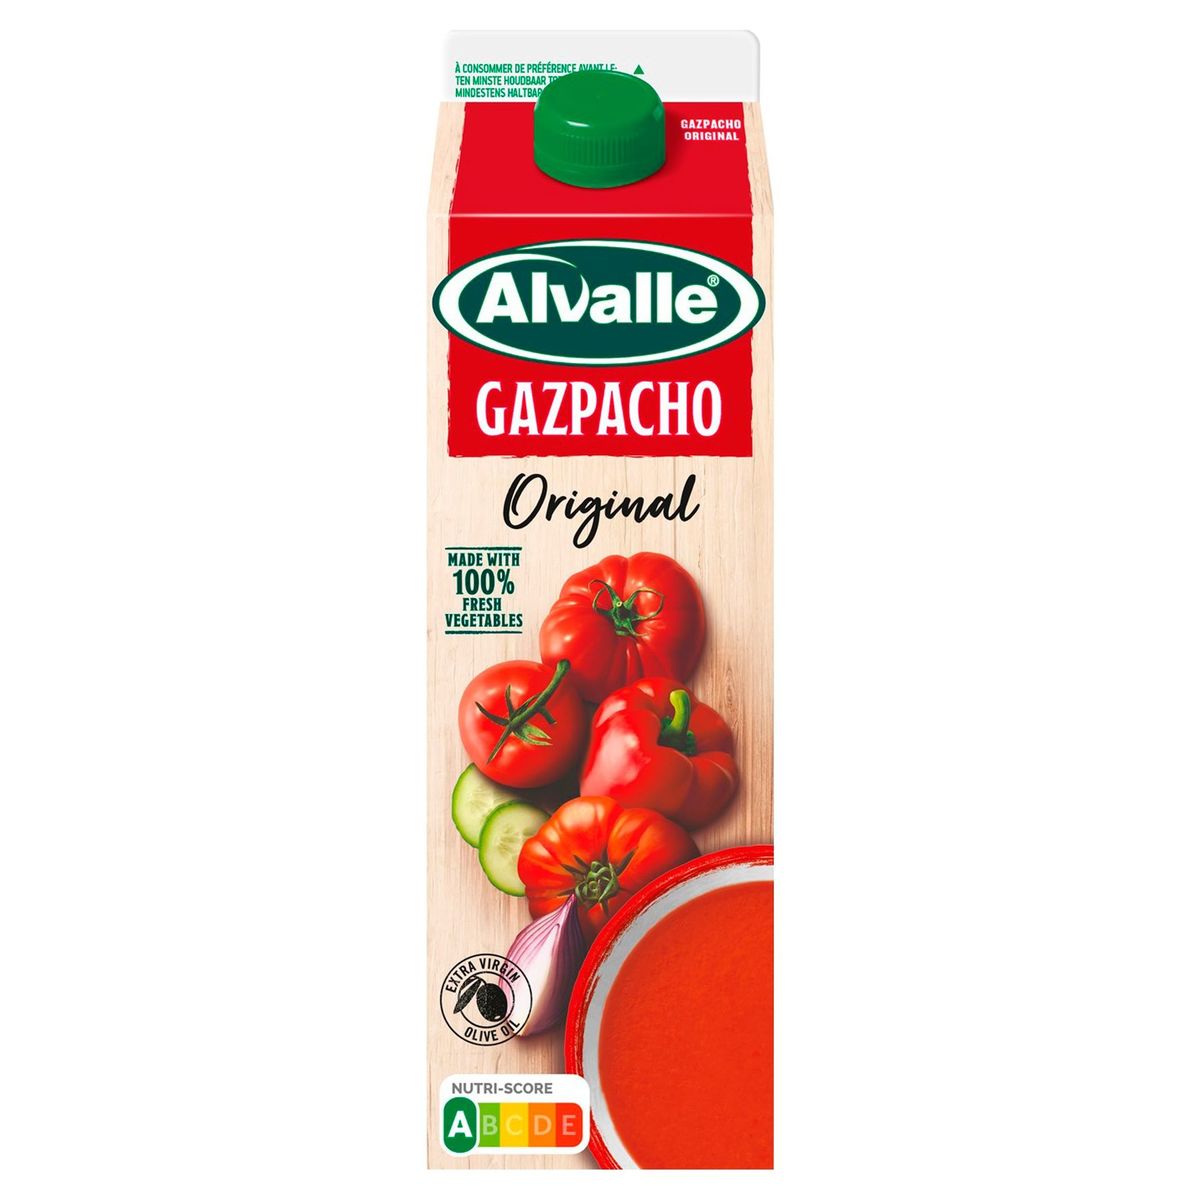 Alvalle Gazpacho Original 1 L